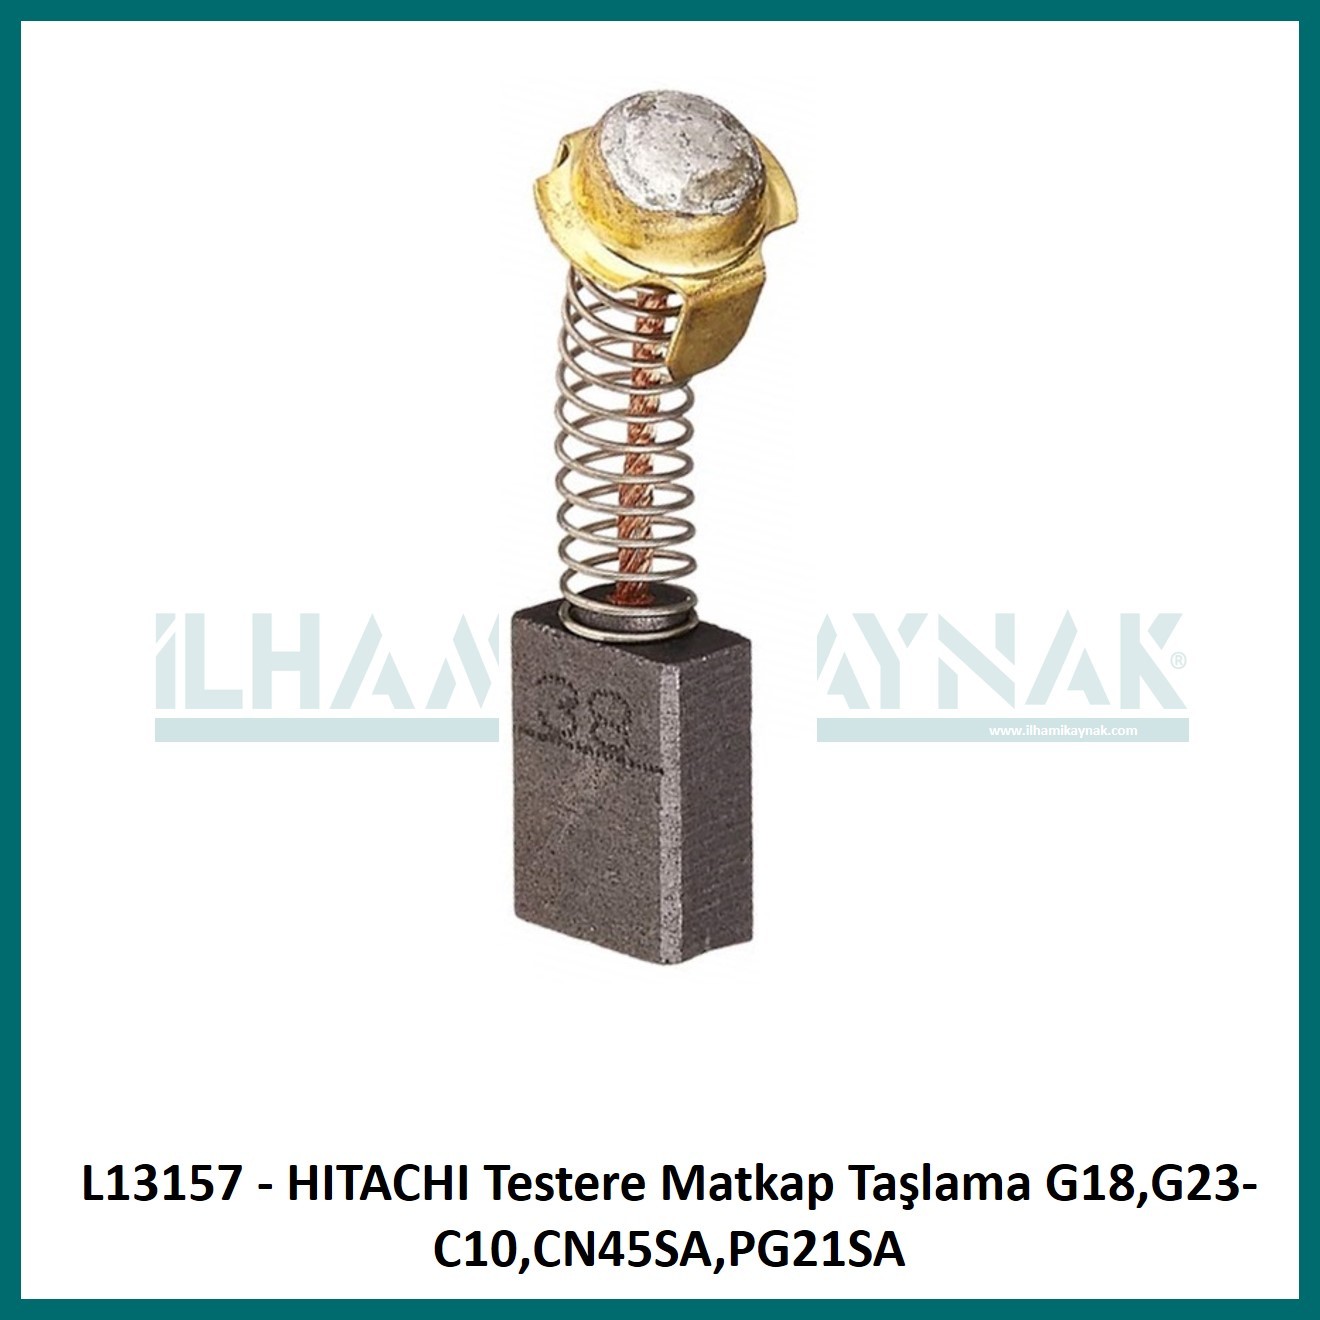 L13157 - HITACHI Testere Matkap Taşlama G18,G23-C10,CN45SA,PG21SA - 7*13*20 mm - Minimum Satın Alım: 10 Adet.